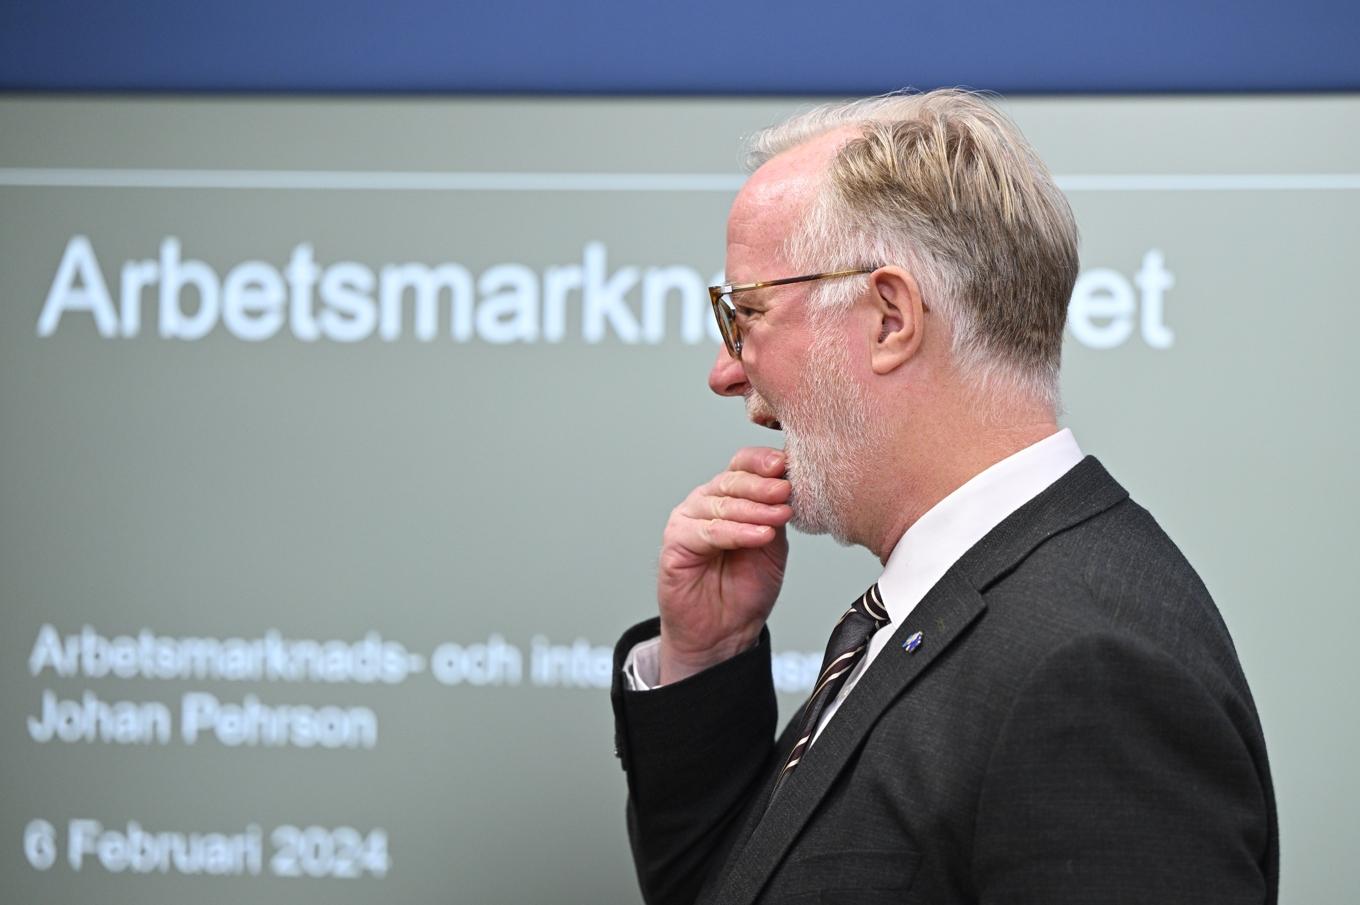 Arbetsmarknads- och integrationsminister Johan Pehrson (L) på en pressträff om arbetsmarknadsläget i Sverige. Foto: Anders Wiklund/TT